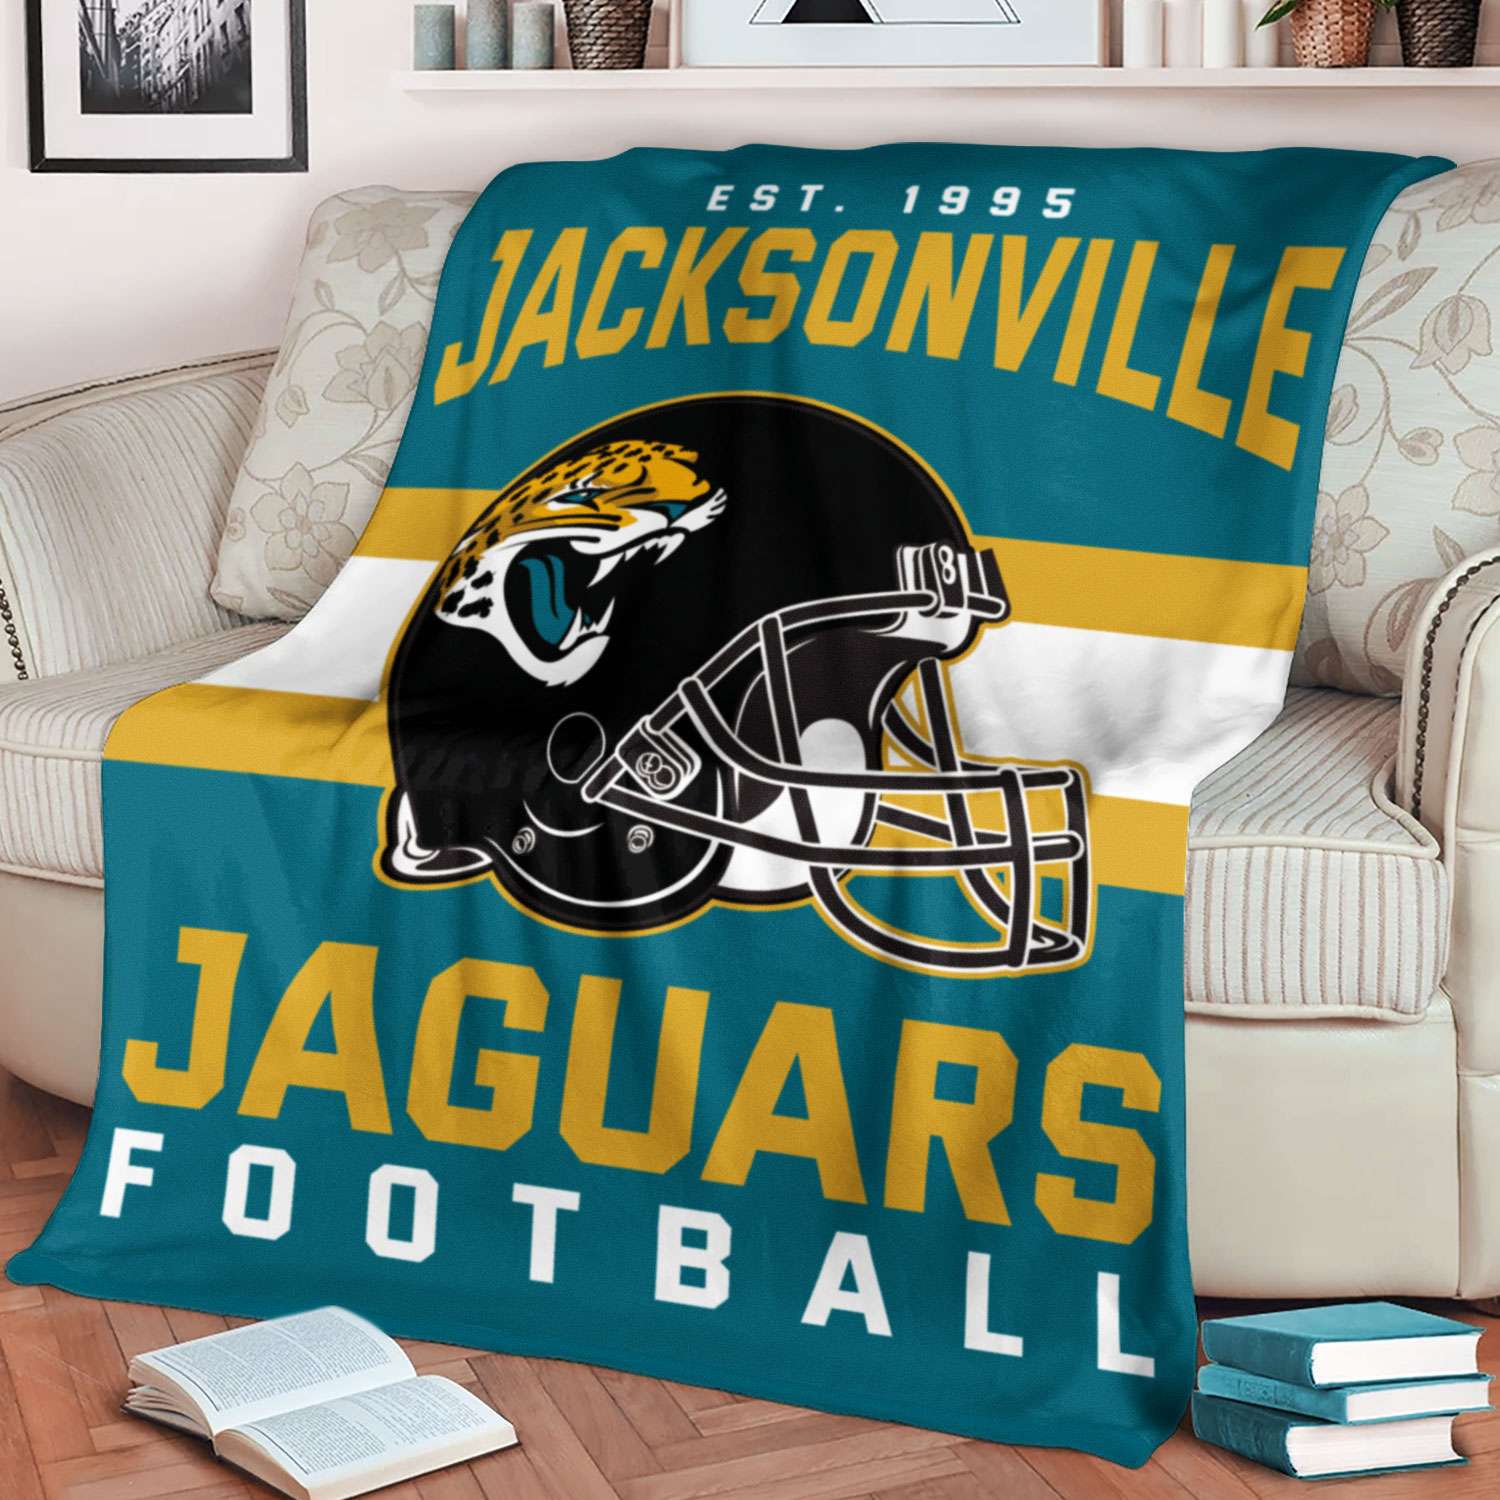 Jacksonville Jaguars NFL Football Team Helmet Blanket